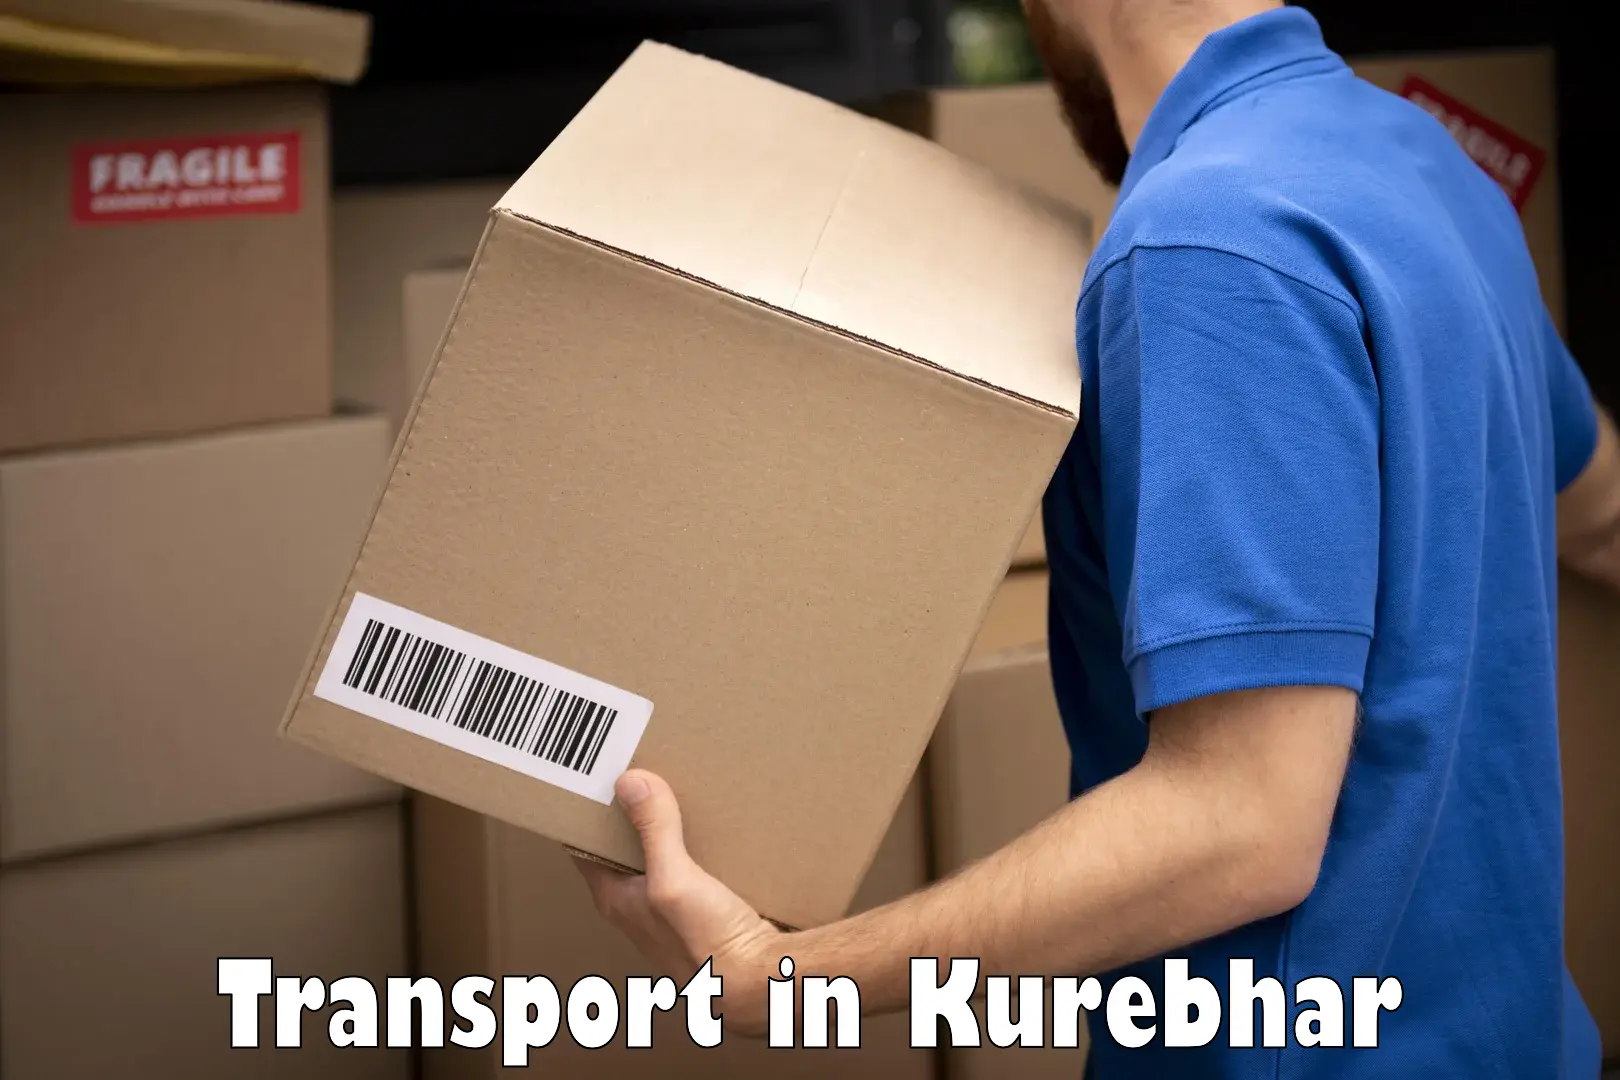 Cargo transportation services in Kurebhar